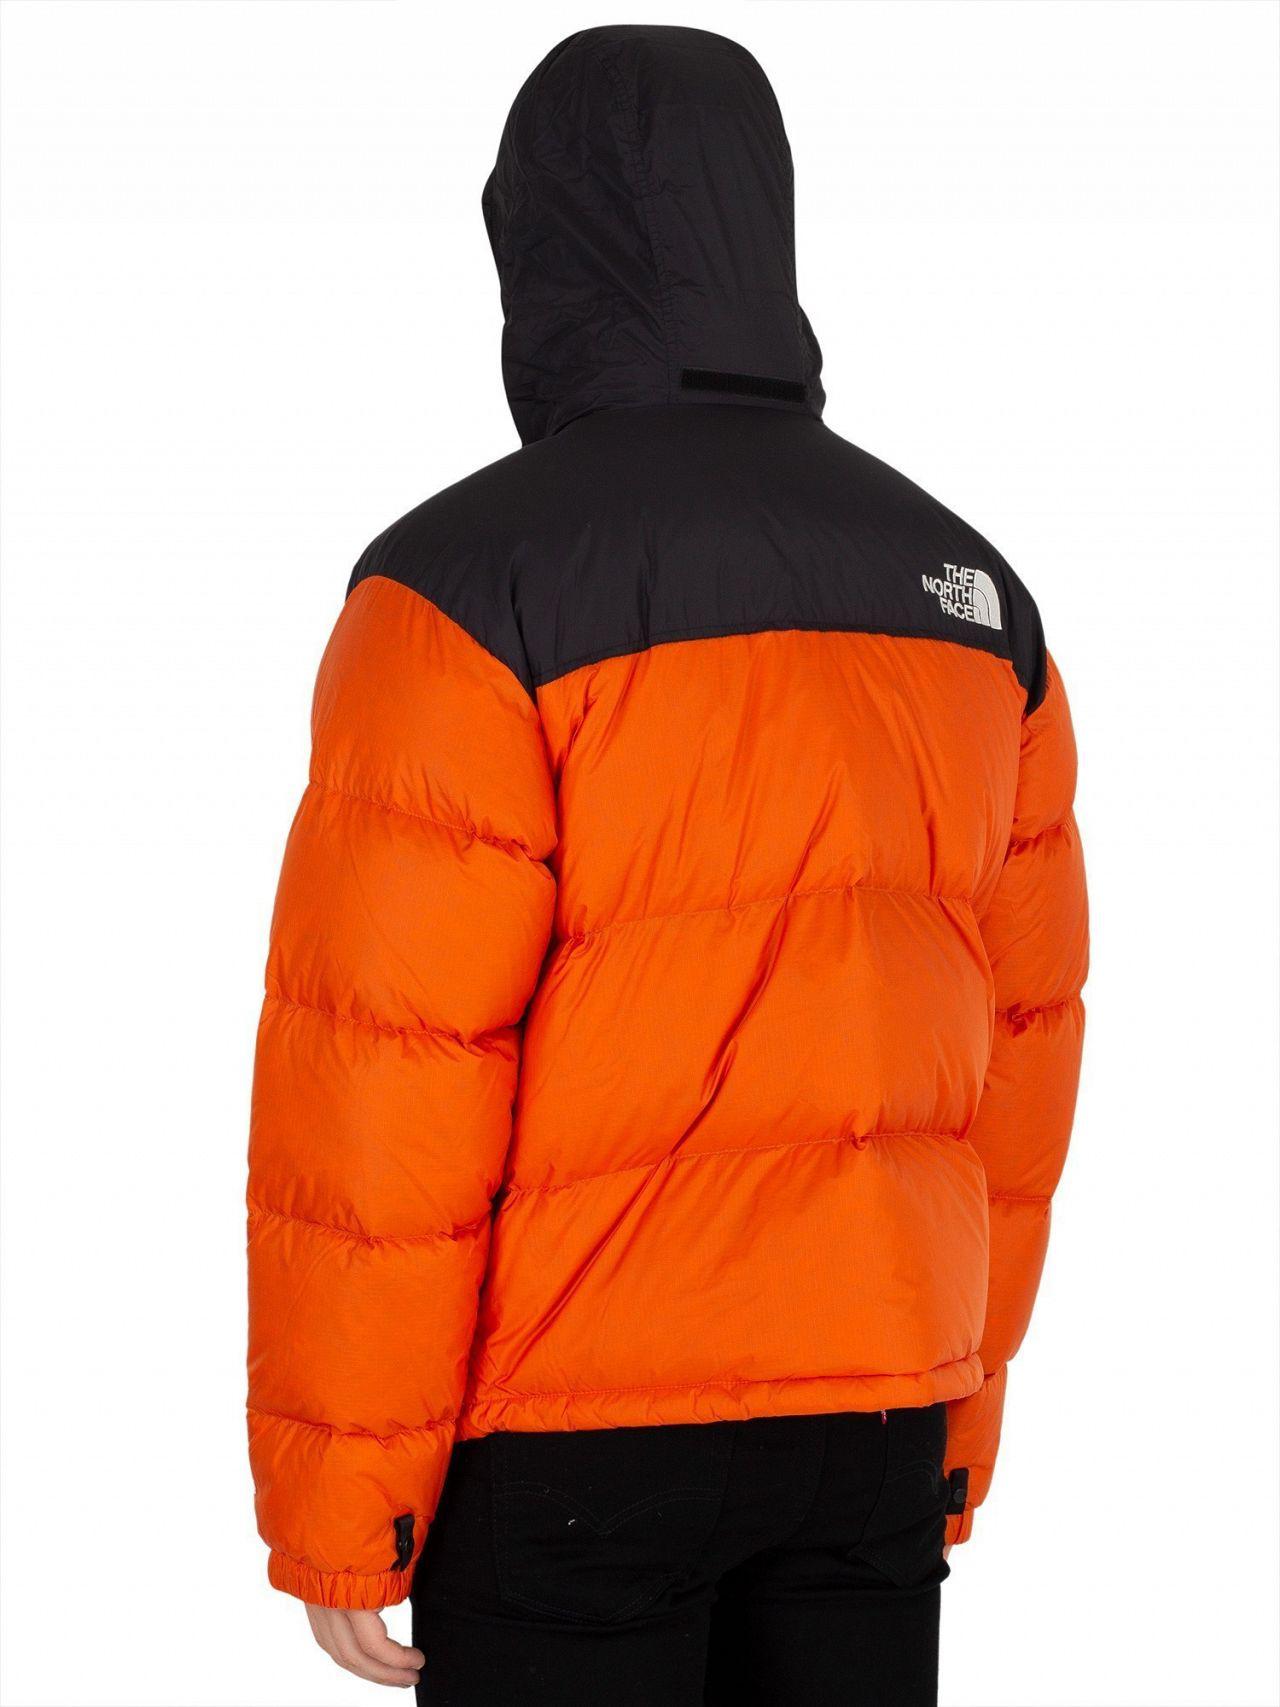 men's 1996 retro nuptse jacket orange